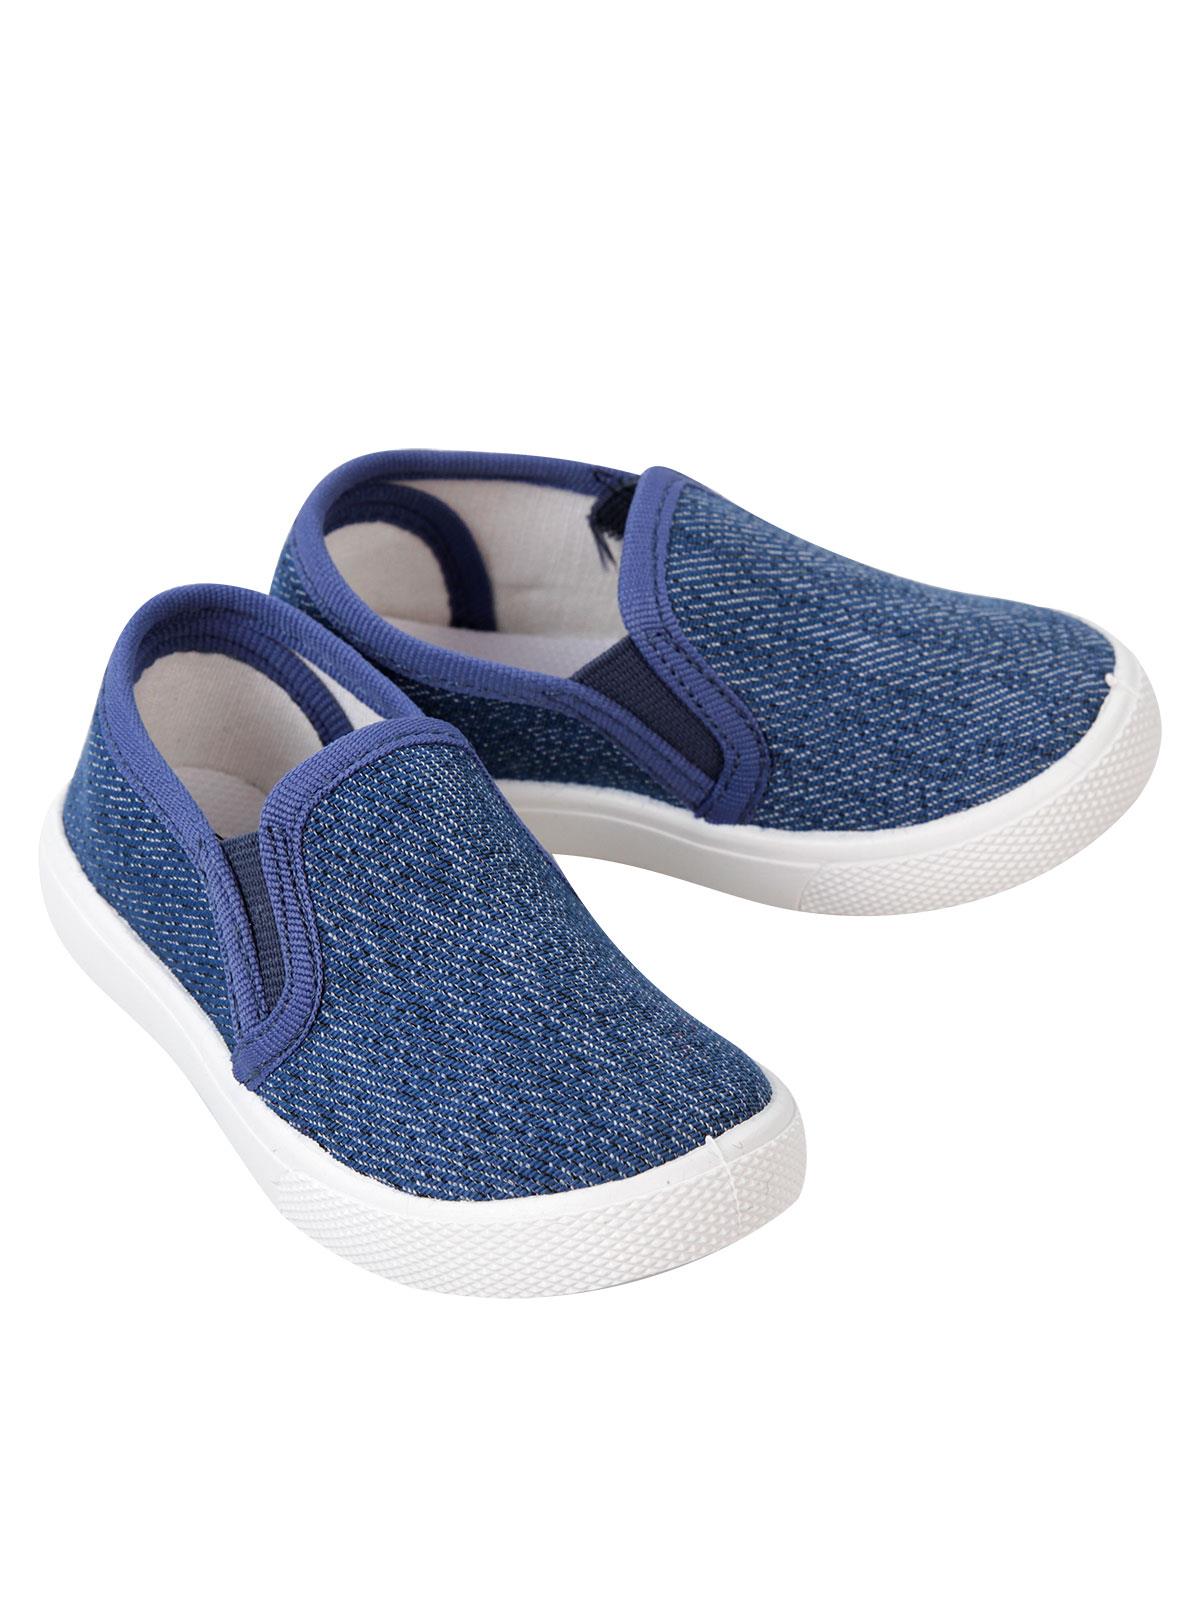 Flubber Erkek Çocuk Keten Ayakkabı 21-25 Numara Mavi